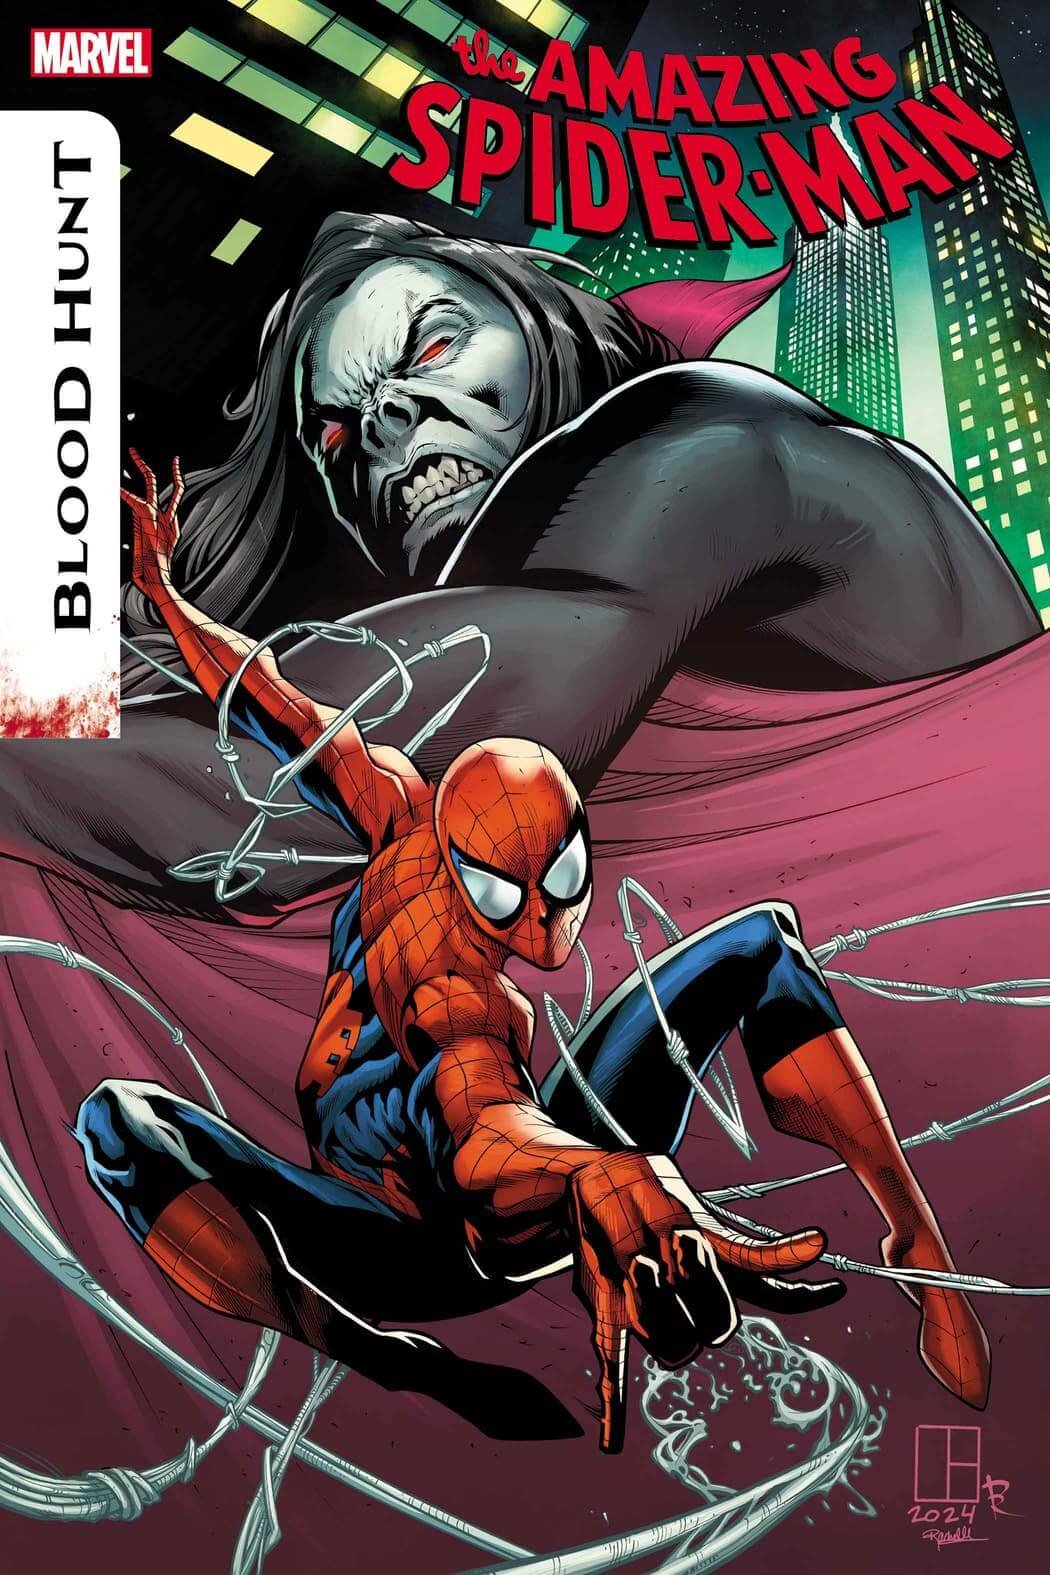 Couverture de Amazing Spider-Man : Blood Hunt 1 par Marcelo Ferreira